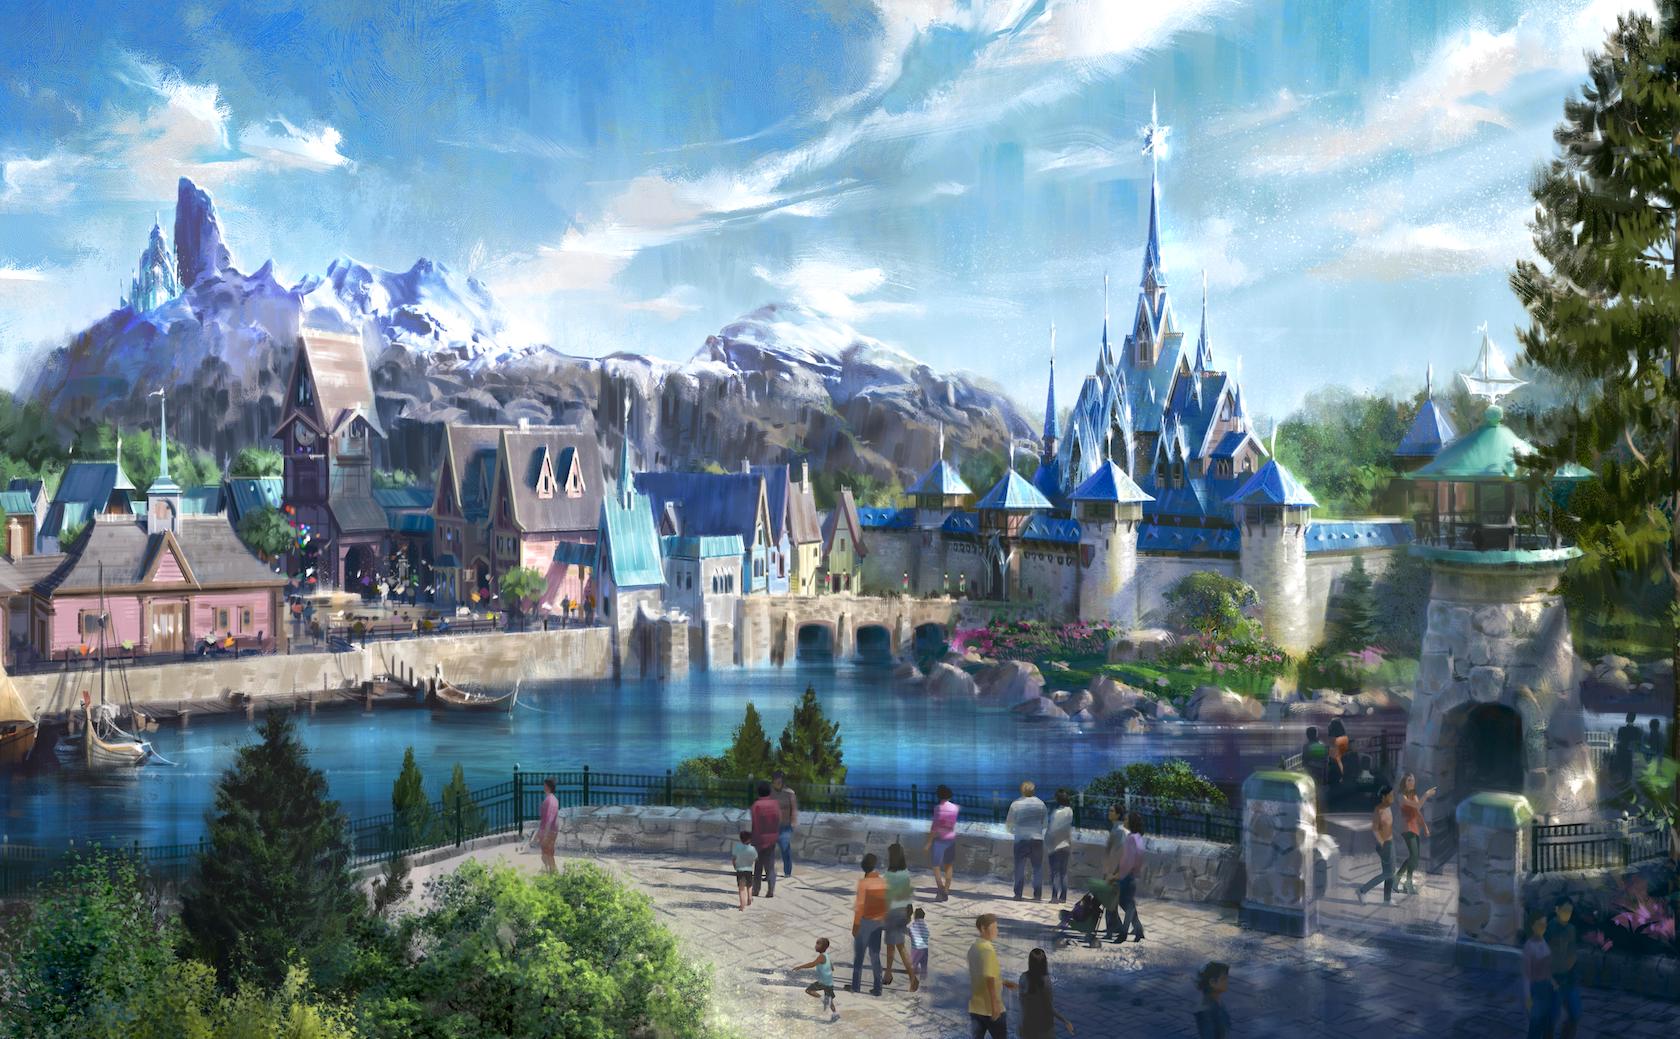 Disneyland Paris Frozen area